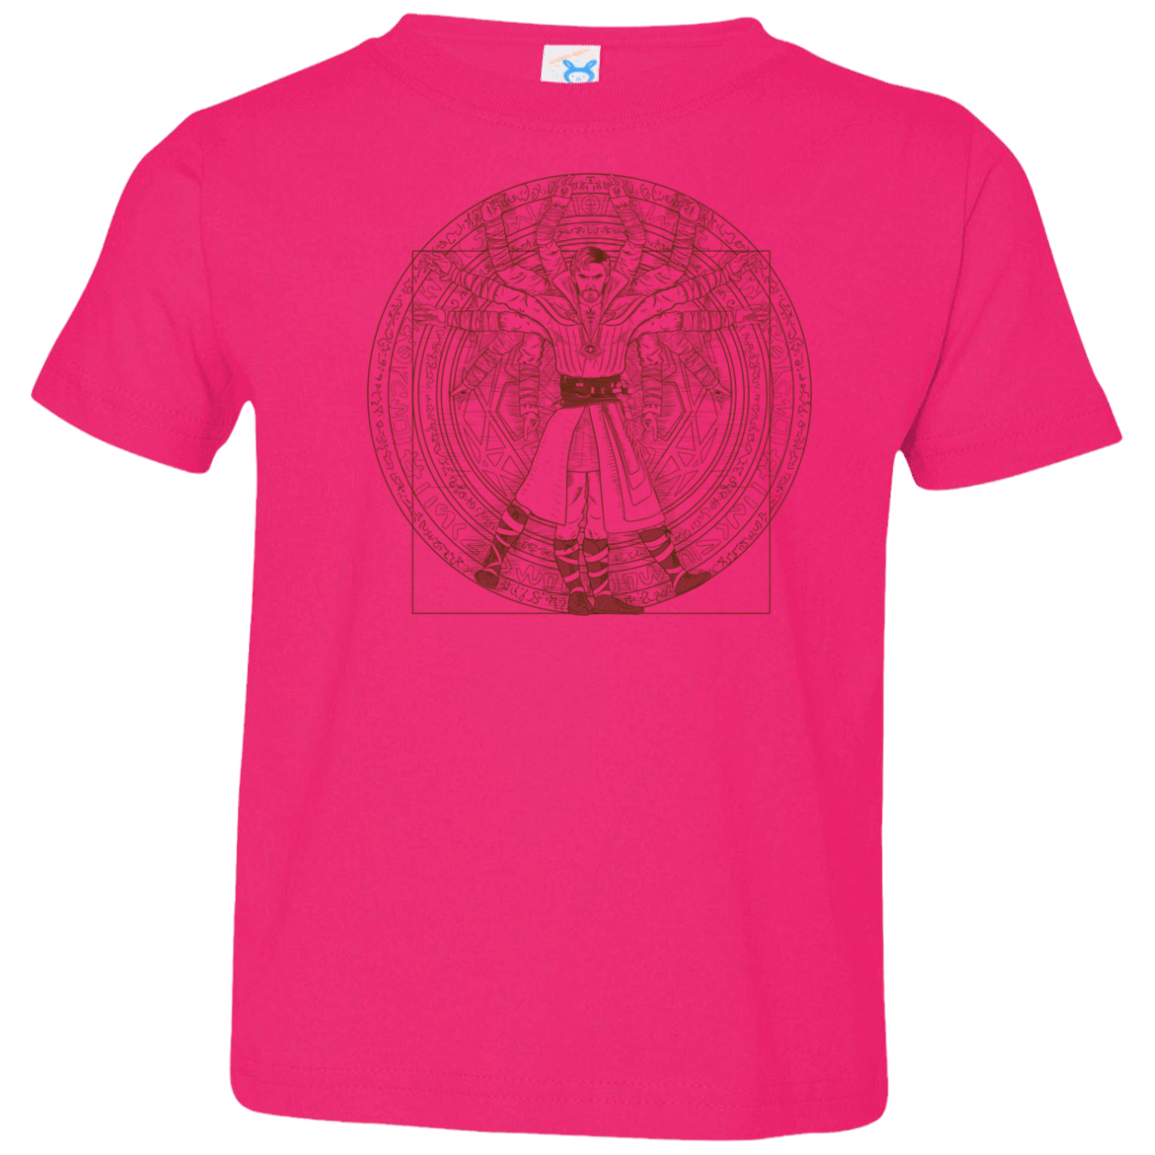 T-Shirts Hot Pink / 2T Doctor Stranger Vitruvian Toddler Premium T-Shirt